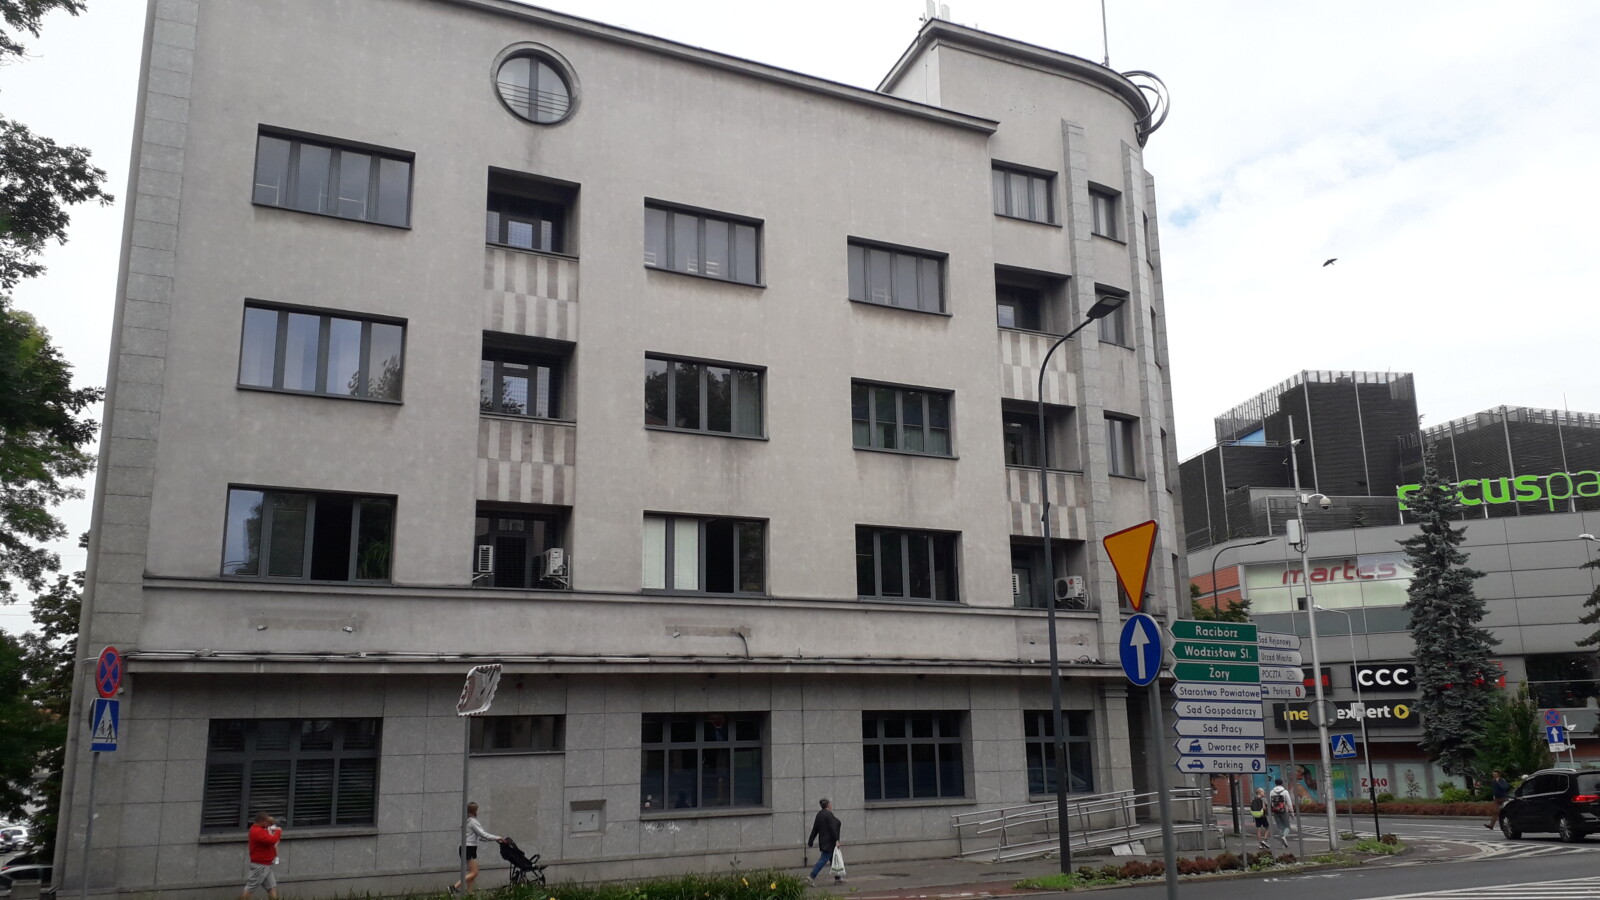 Za 6,5 mln złotych bank chce sprzedać reprezentacyjny budynek. Zainteresowany jest Urząd Miasta Rybnika